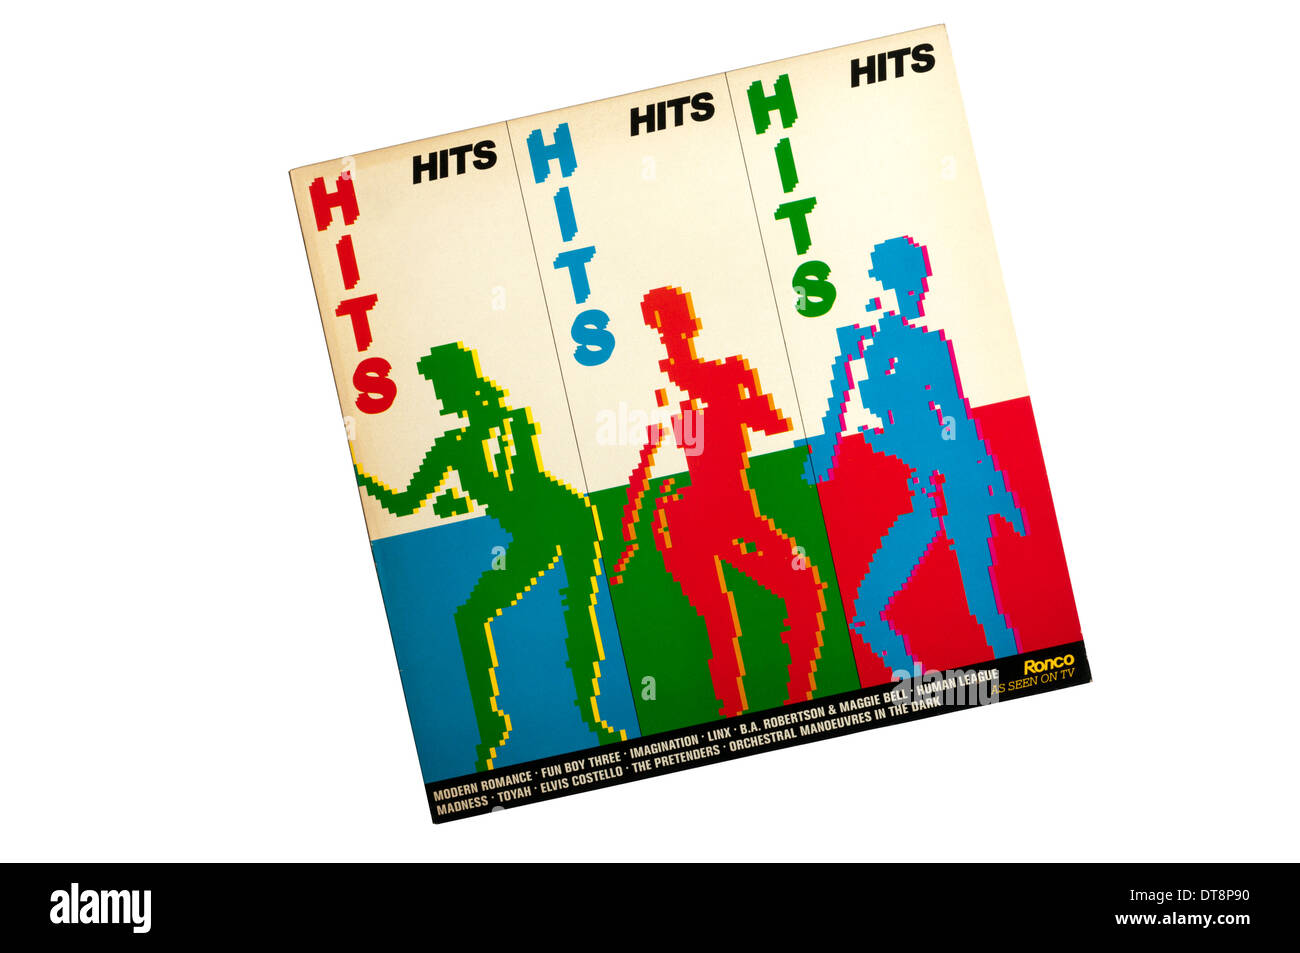 Hits Hits hits album by Ronco en 1981. Banque D'Images